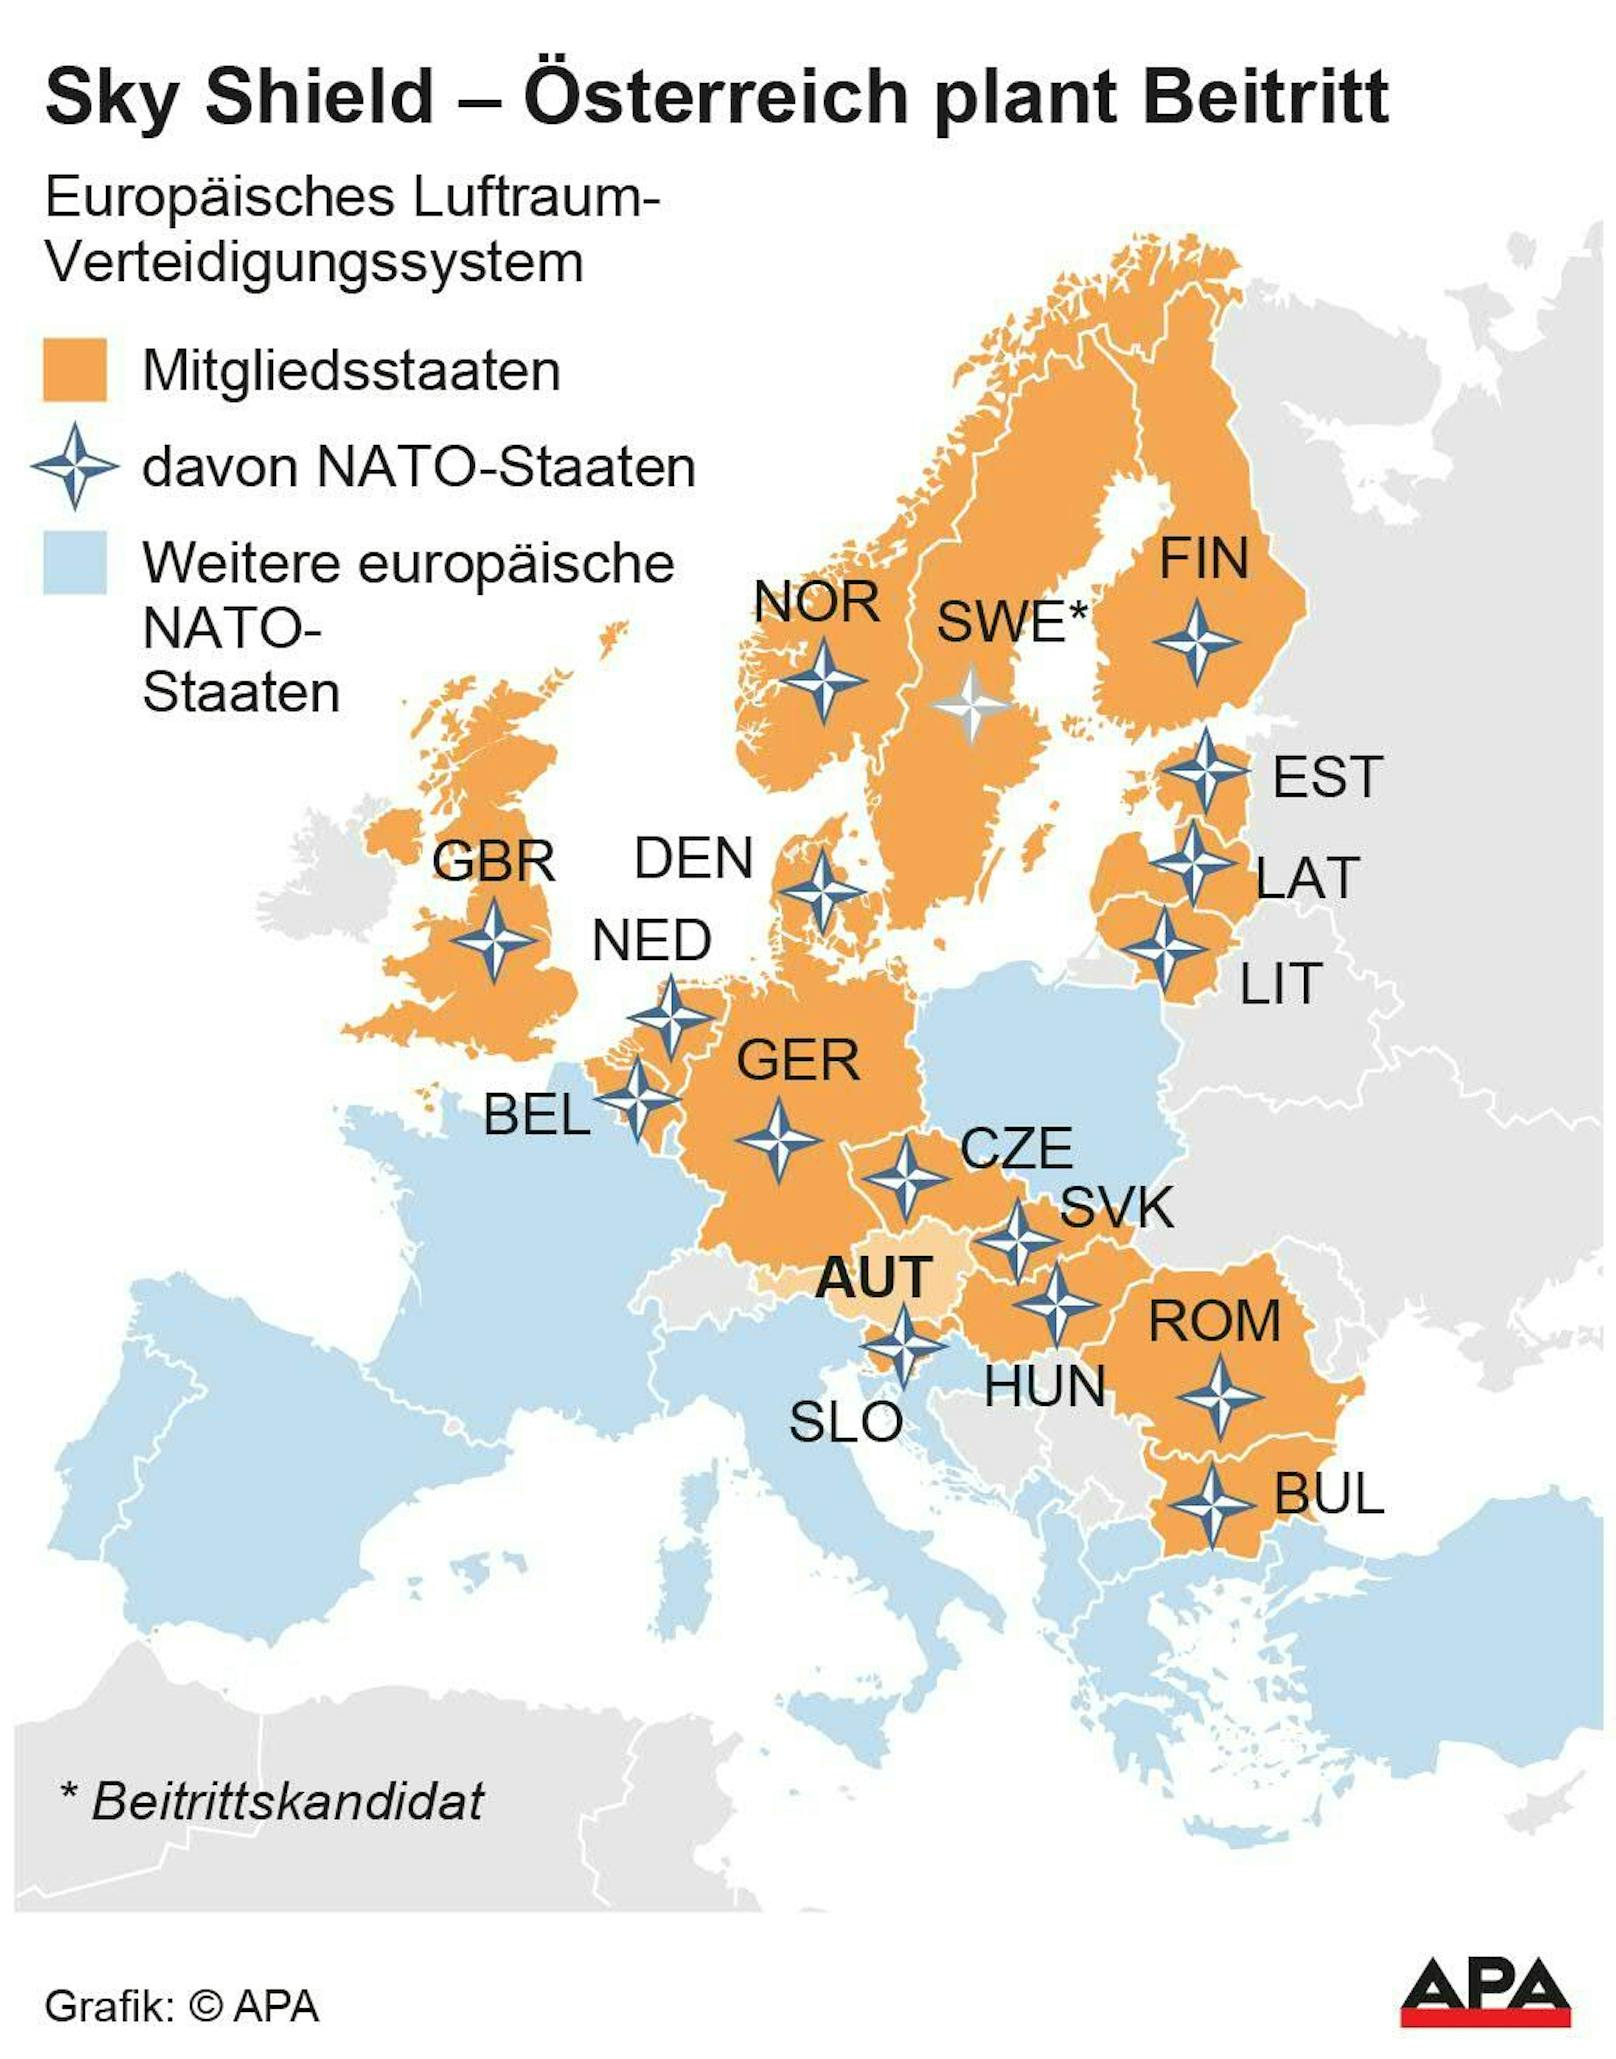 Europakarte mit Mitgliedsstaaten von Sky Shield sowie NATO-Länder